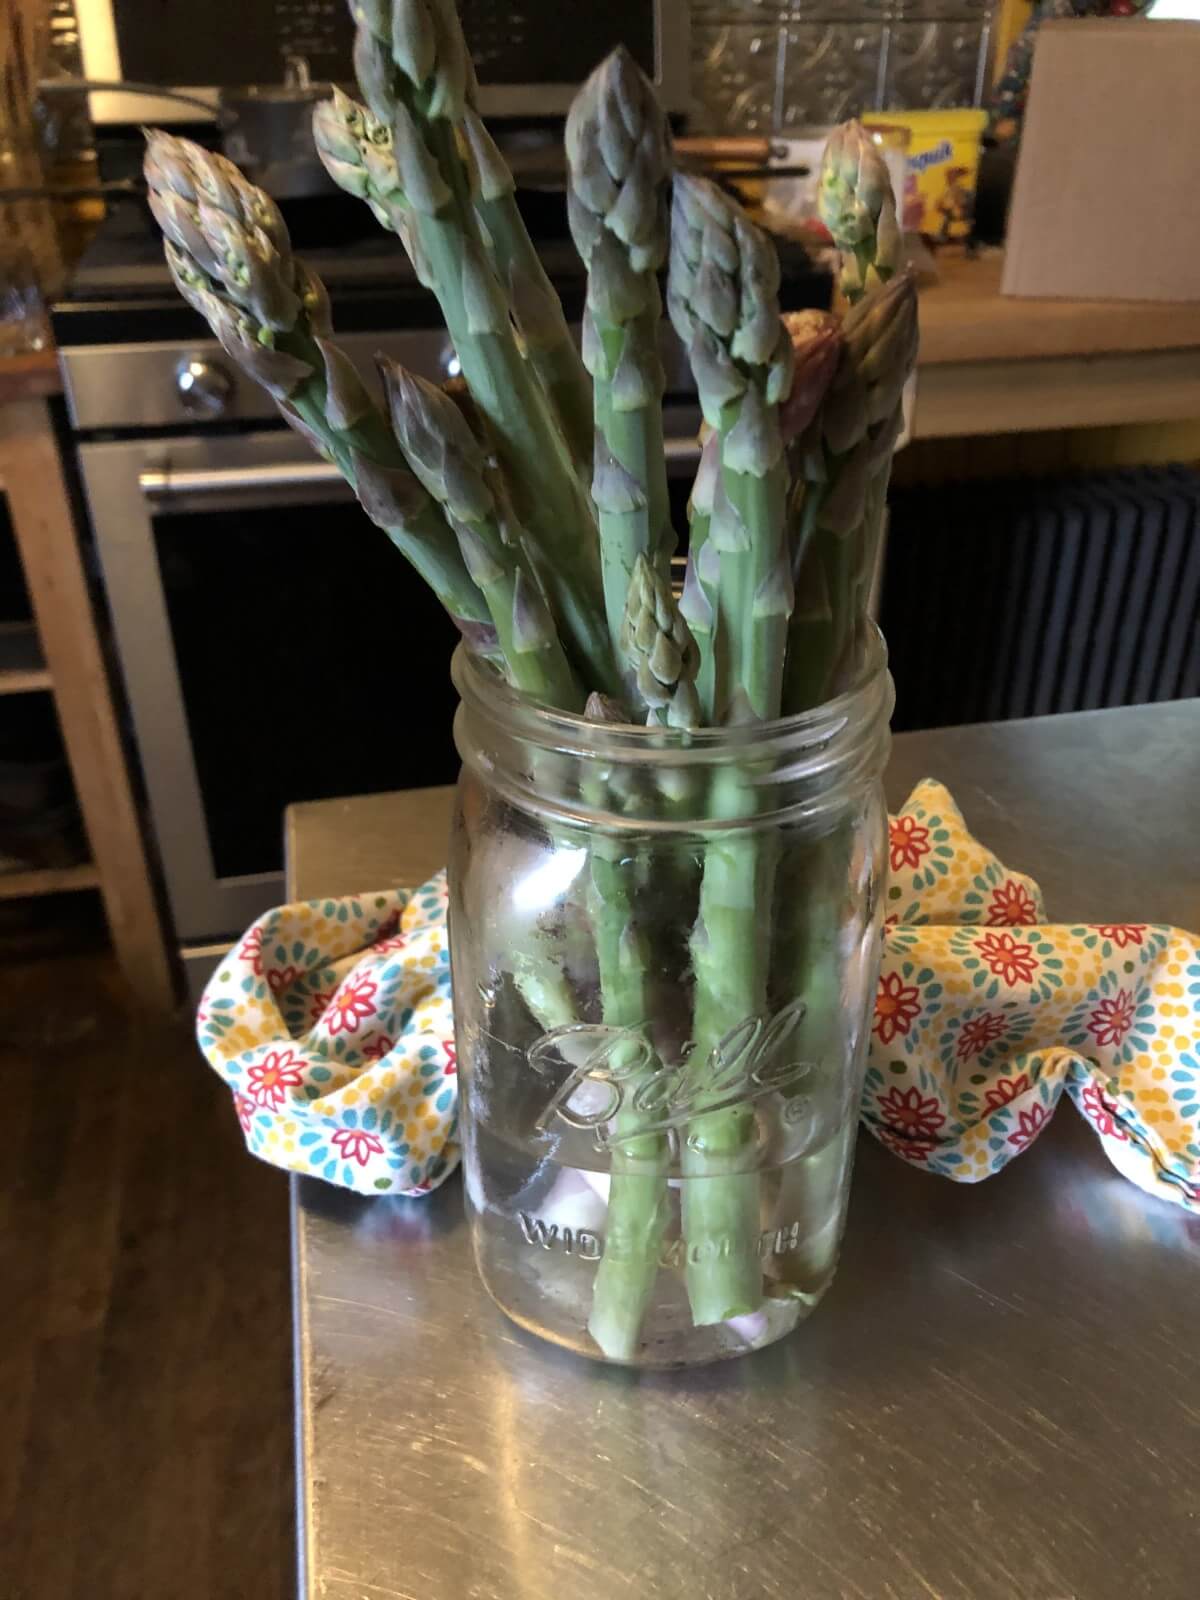 asparagus in jar in water